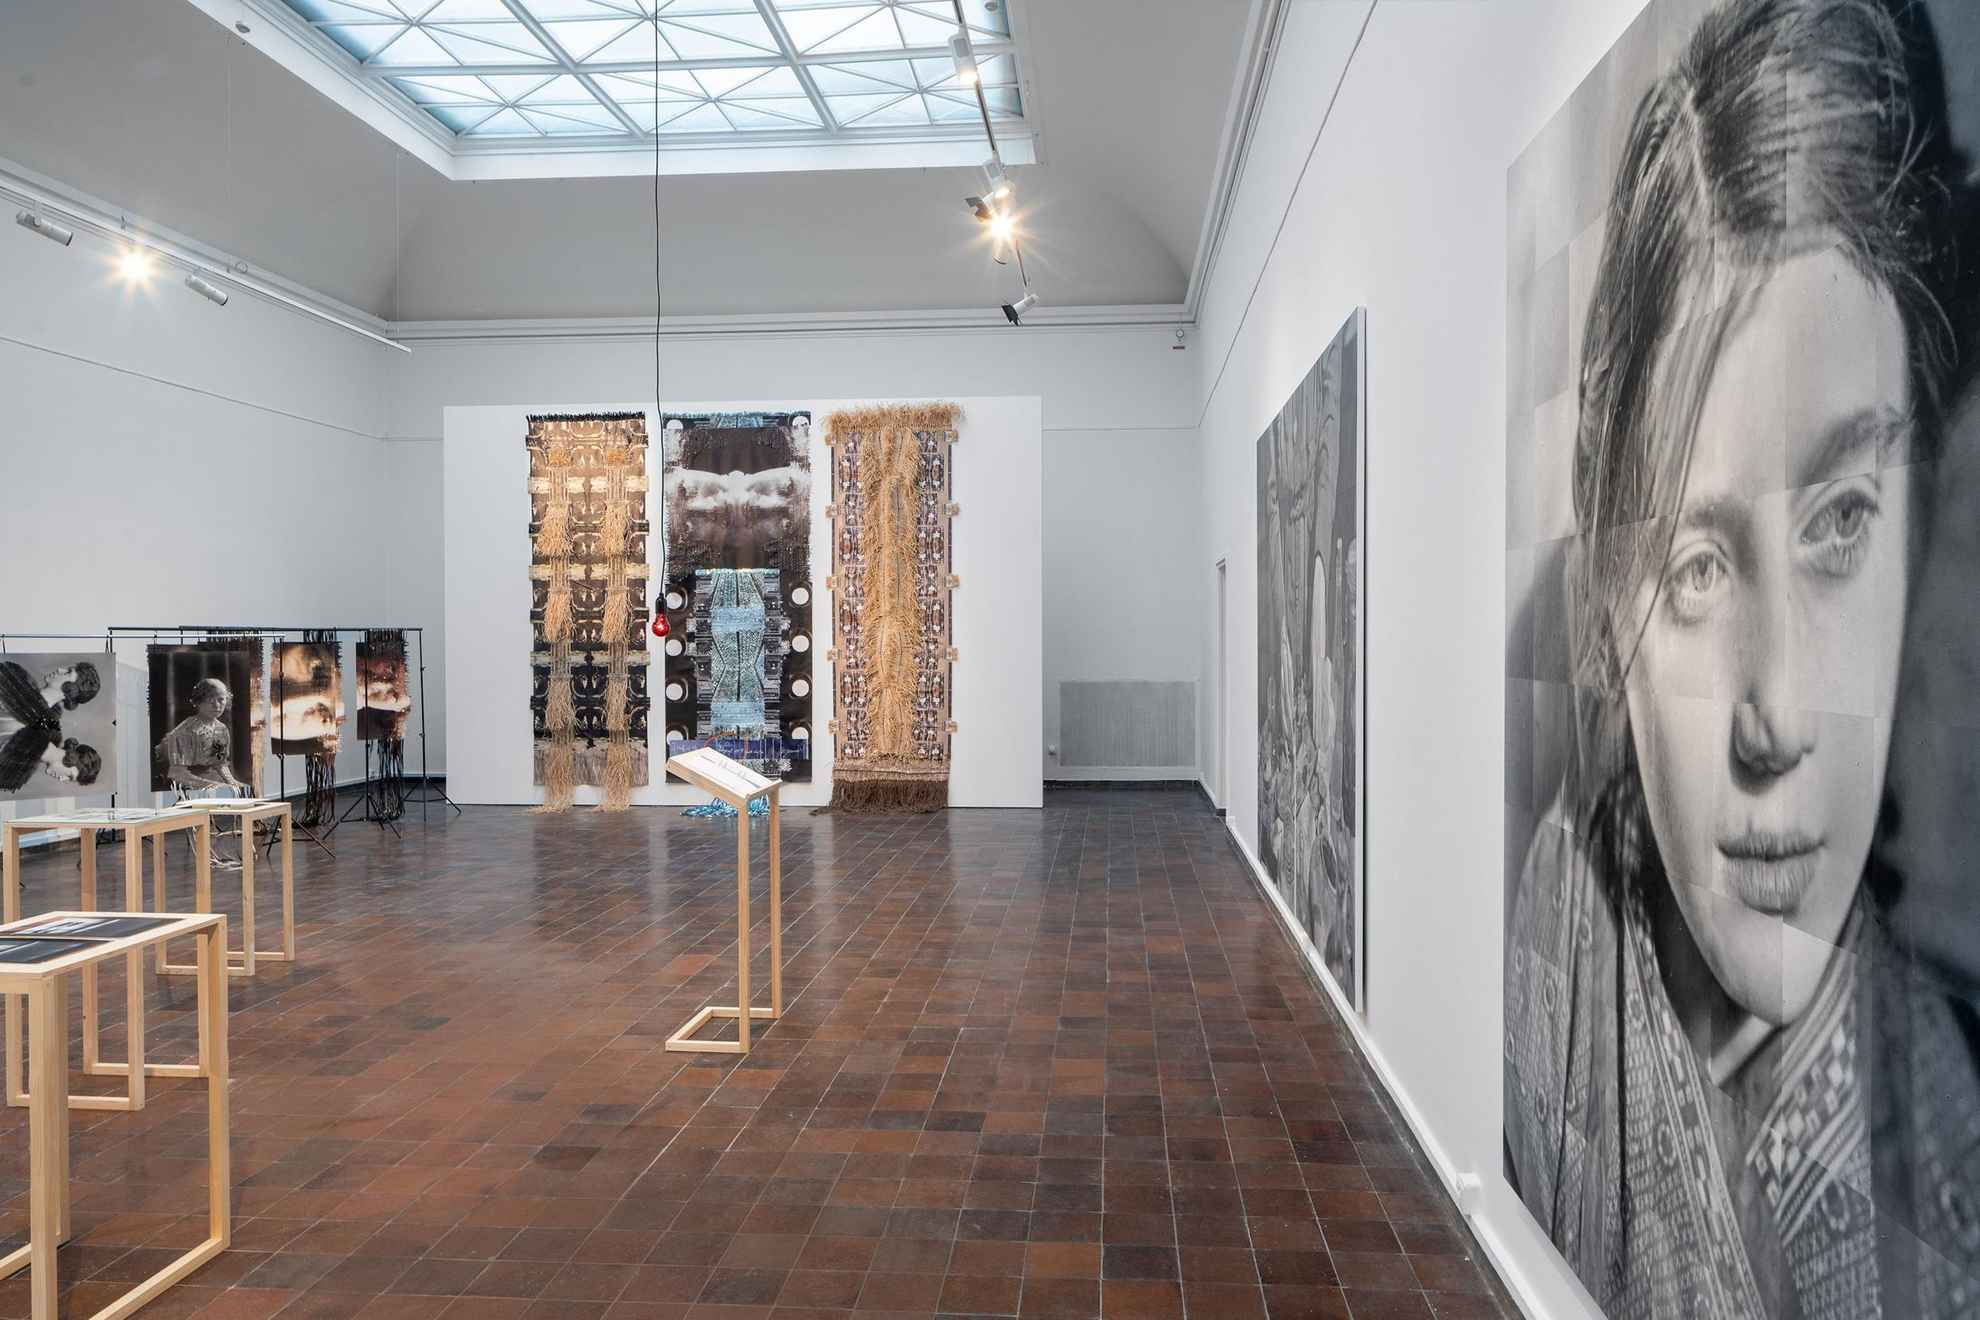 Installation dans une exposition. Une grande image en noir et blanc d'une femme à l'avant et une grande œuvre d'art avec des photographies tressées dans de nouvelles structures, à l'arrière-plan.